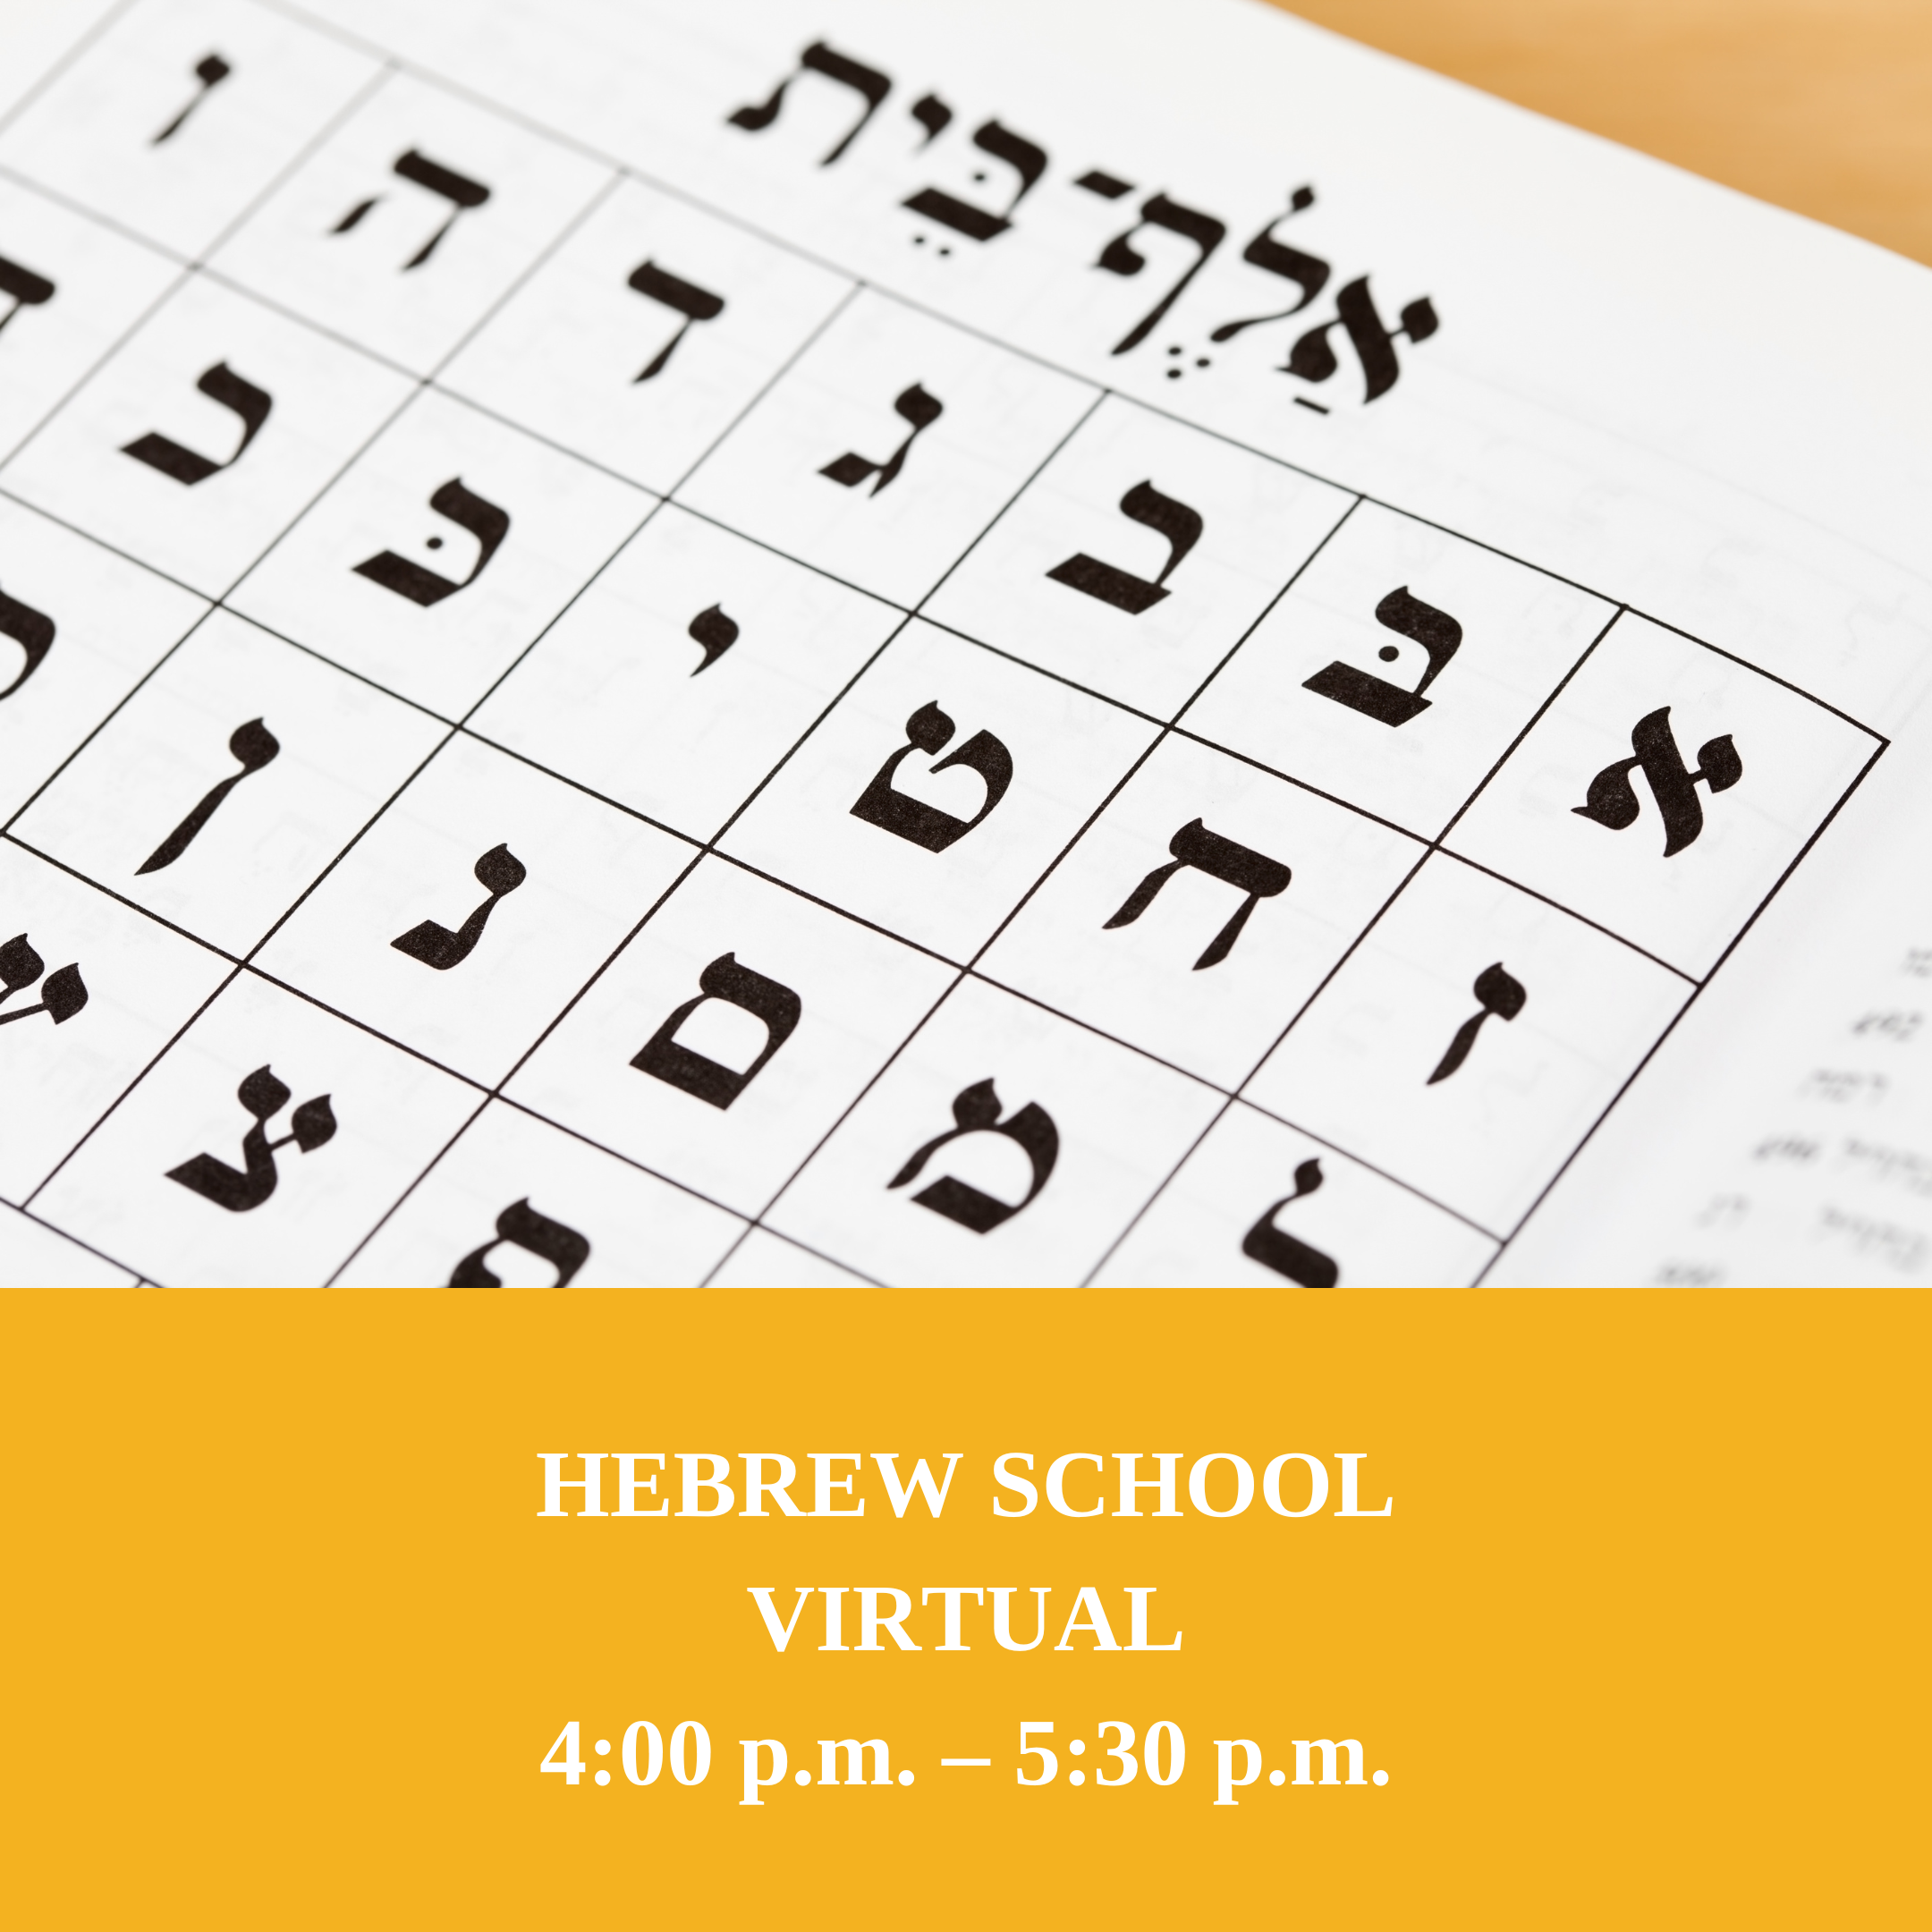 HEBREW SCHOOL